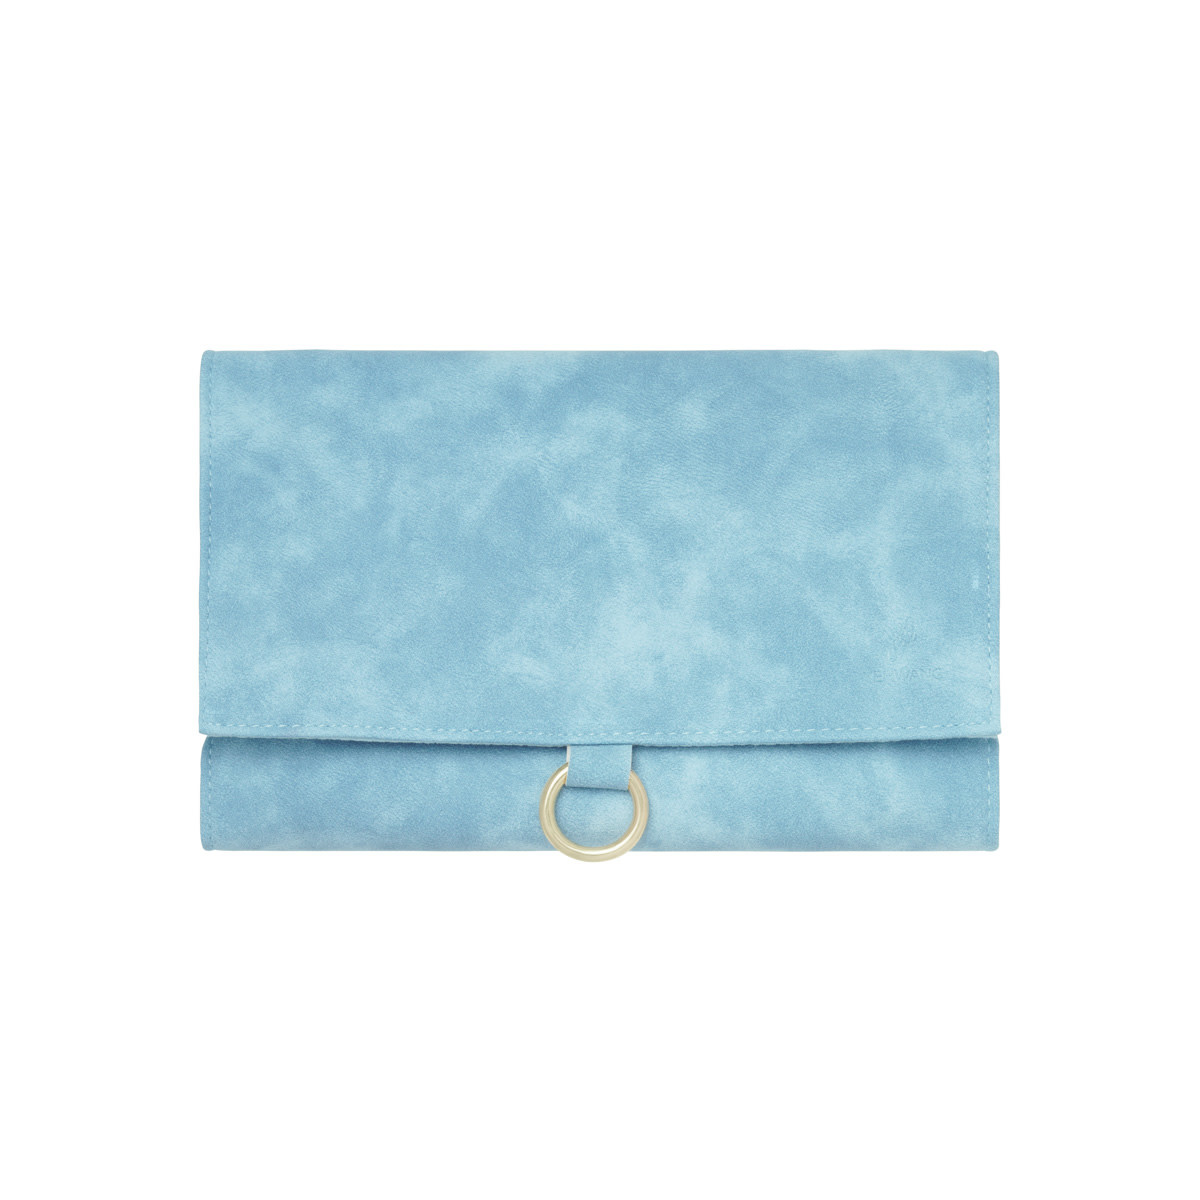 Bag Jewelry Storage - blue